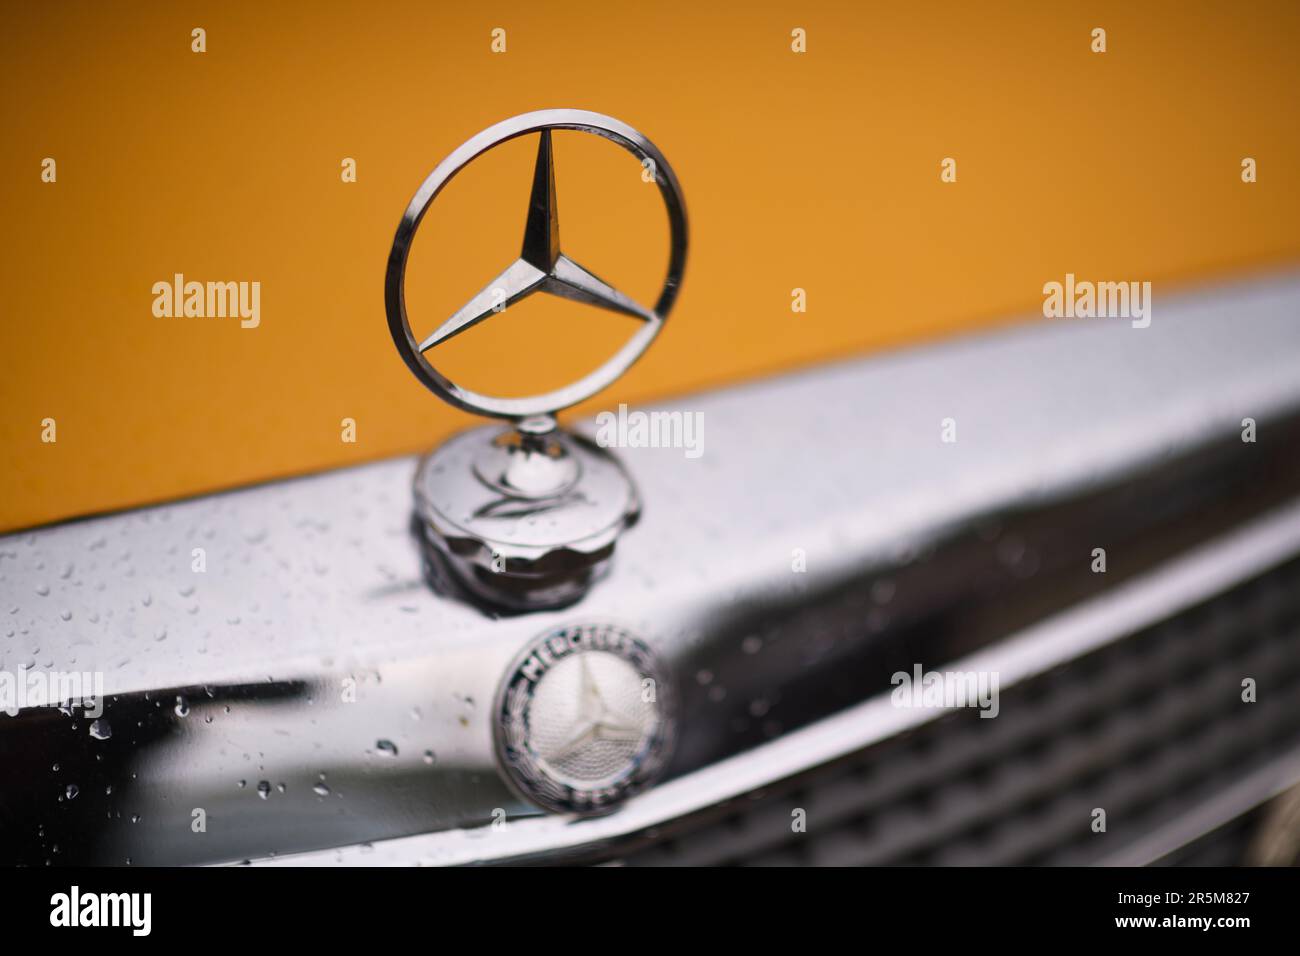 Auto-Fußmatten mit Namen für Mercedes W110